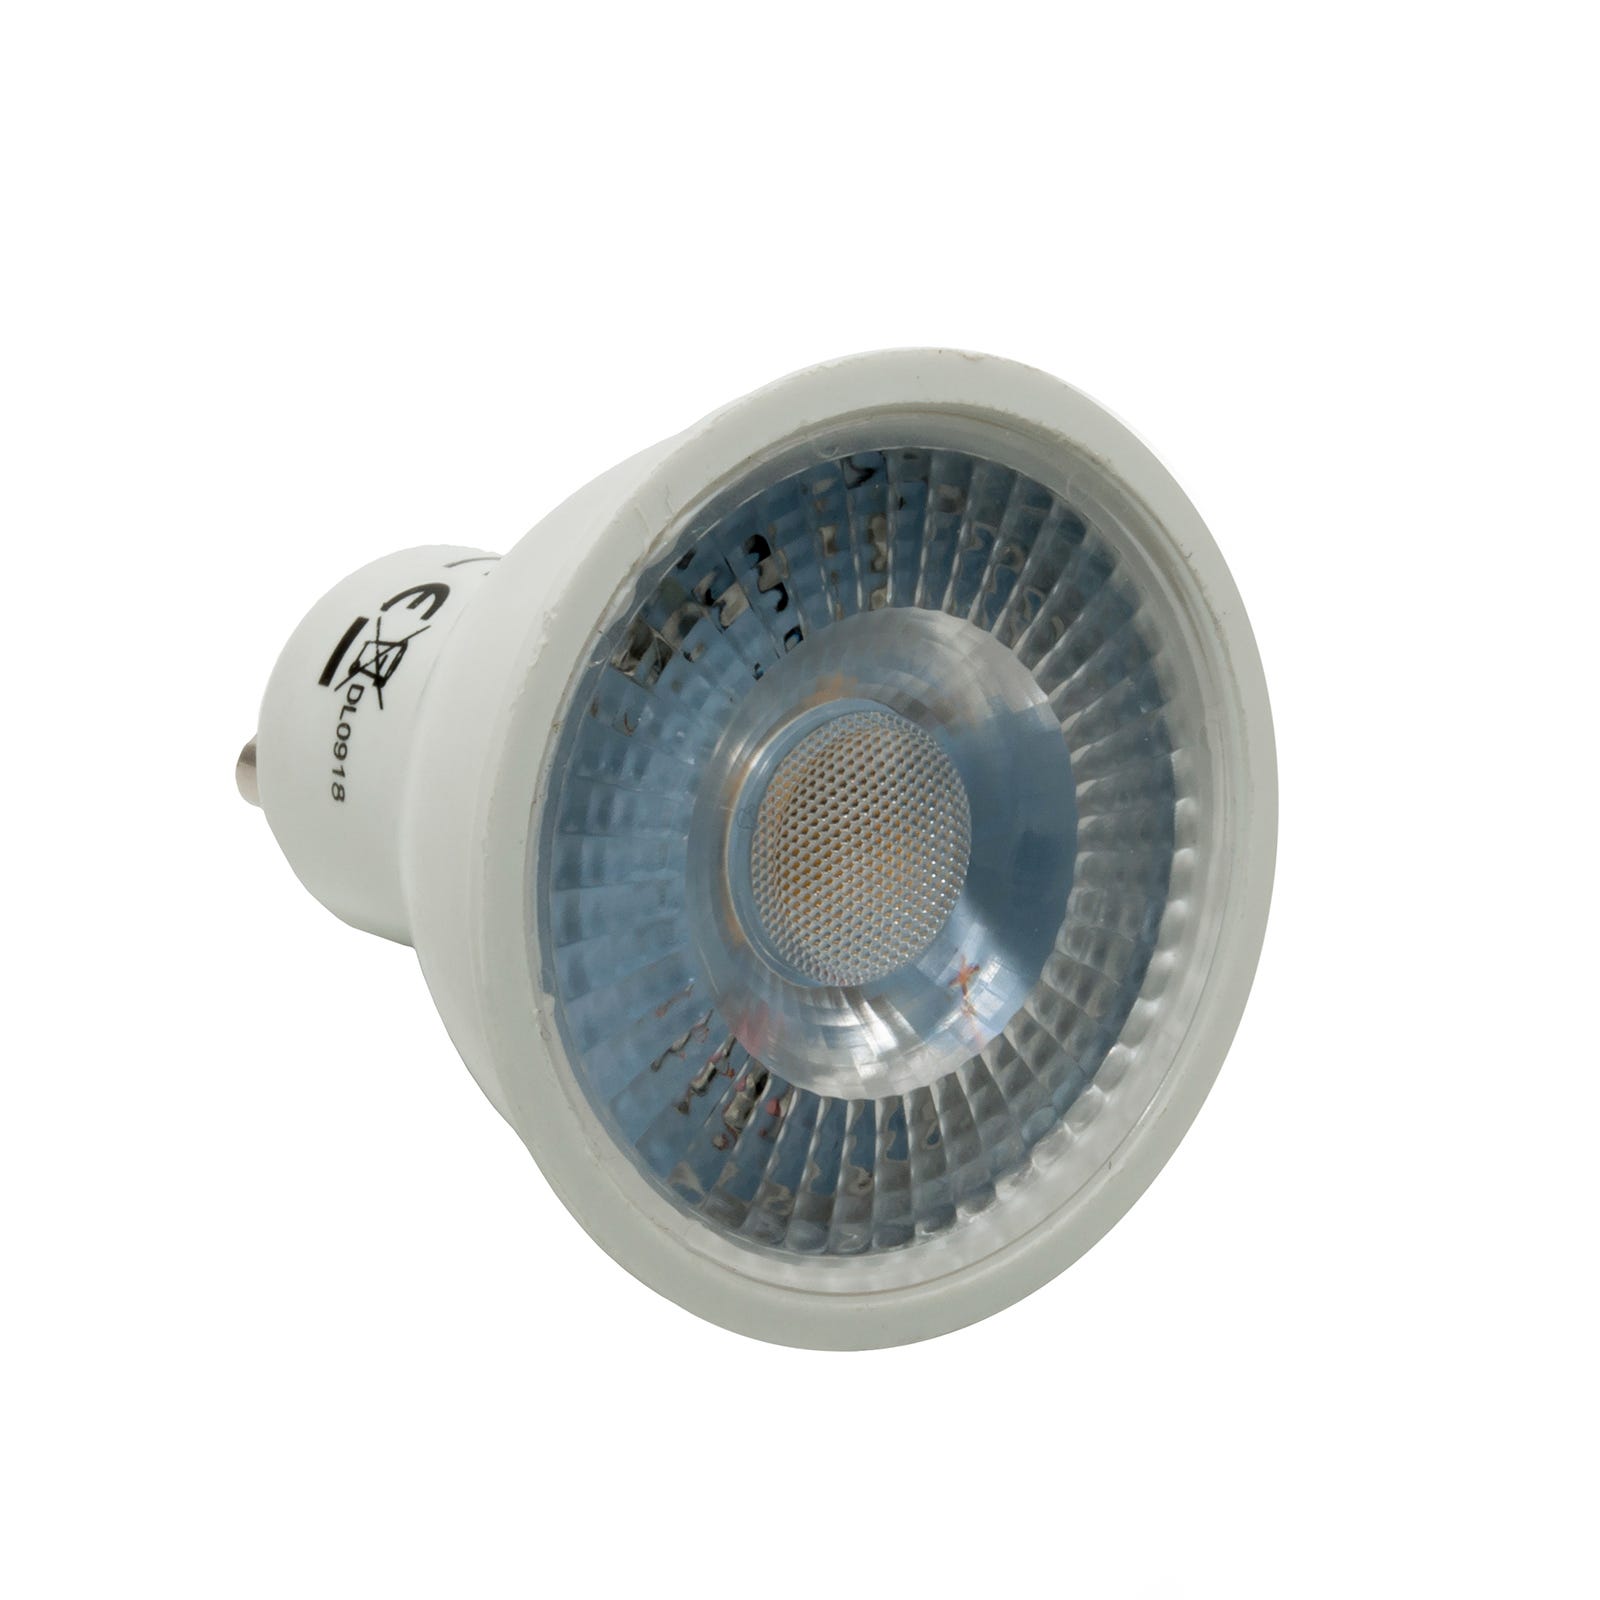 Ampoule spot LED 5W GU10 angle étroit 38 degrés faible